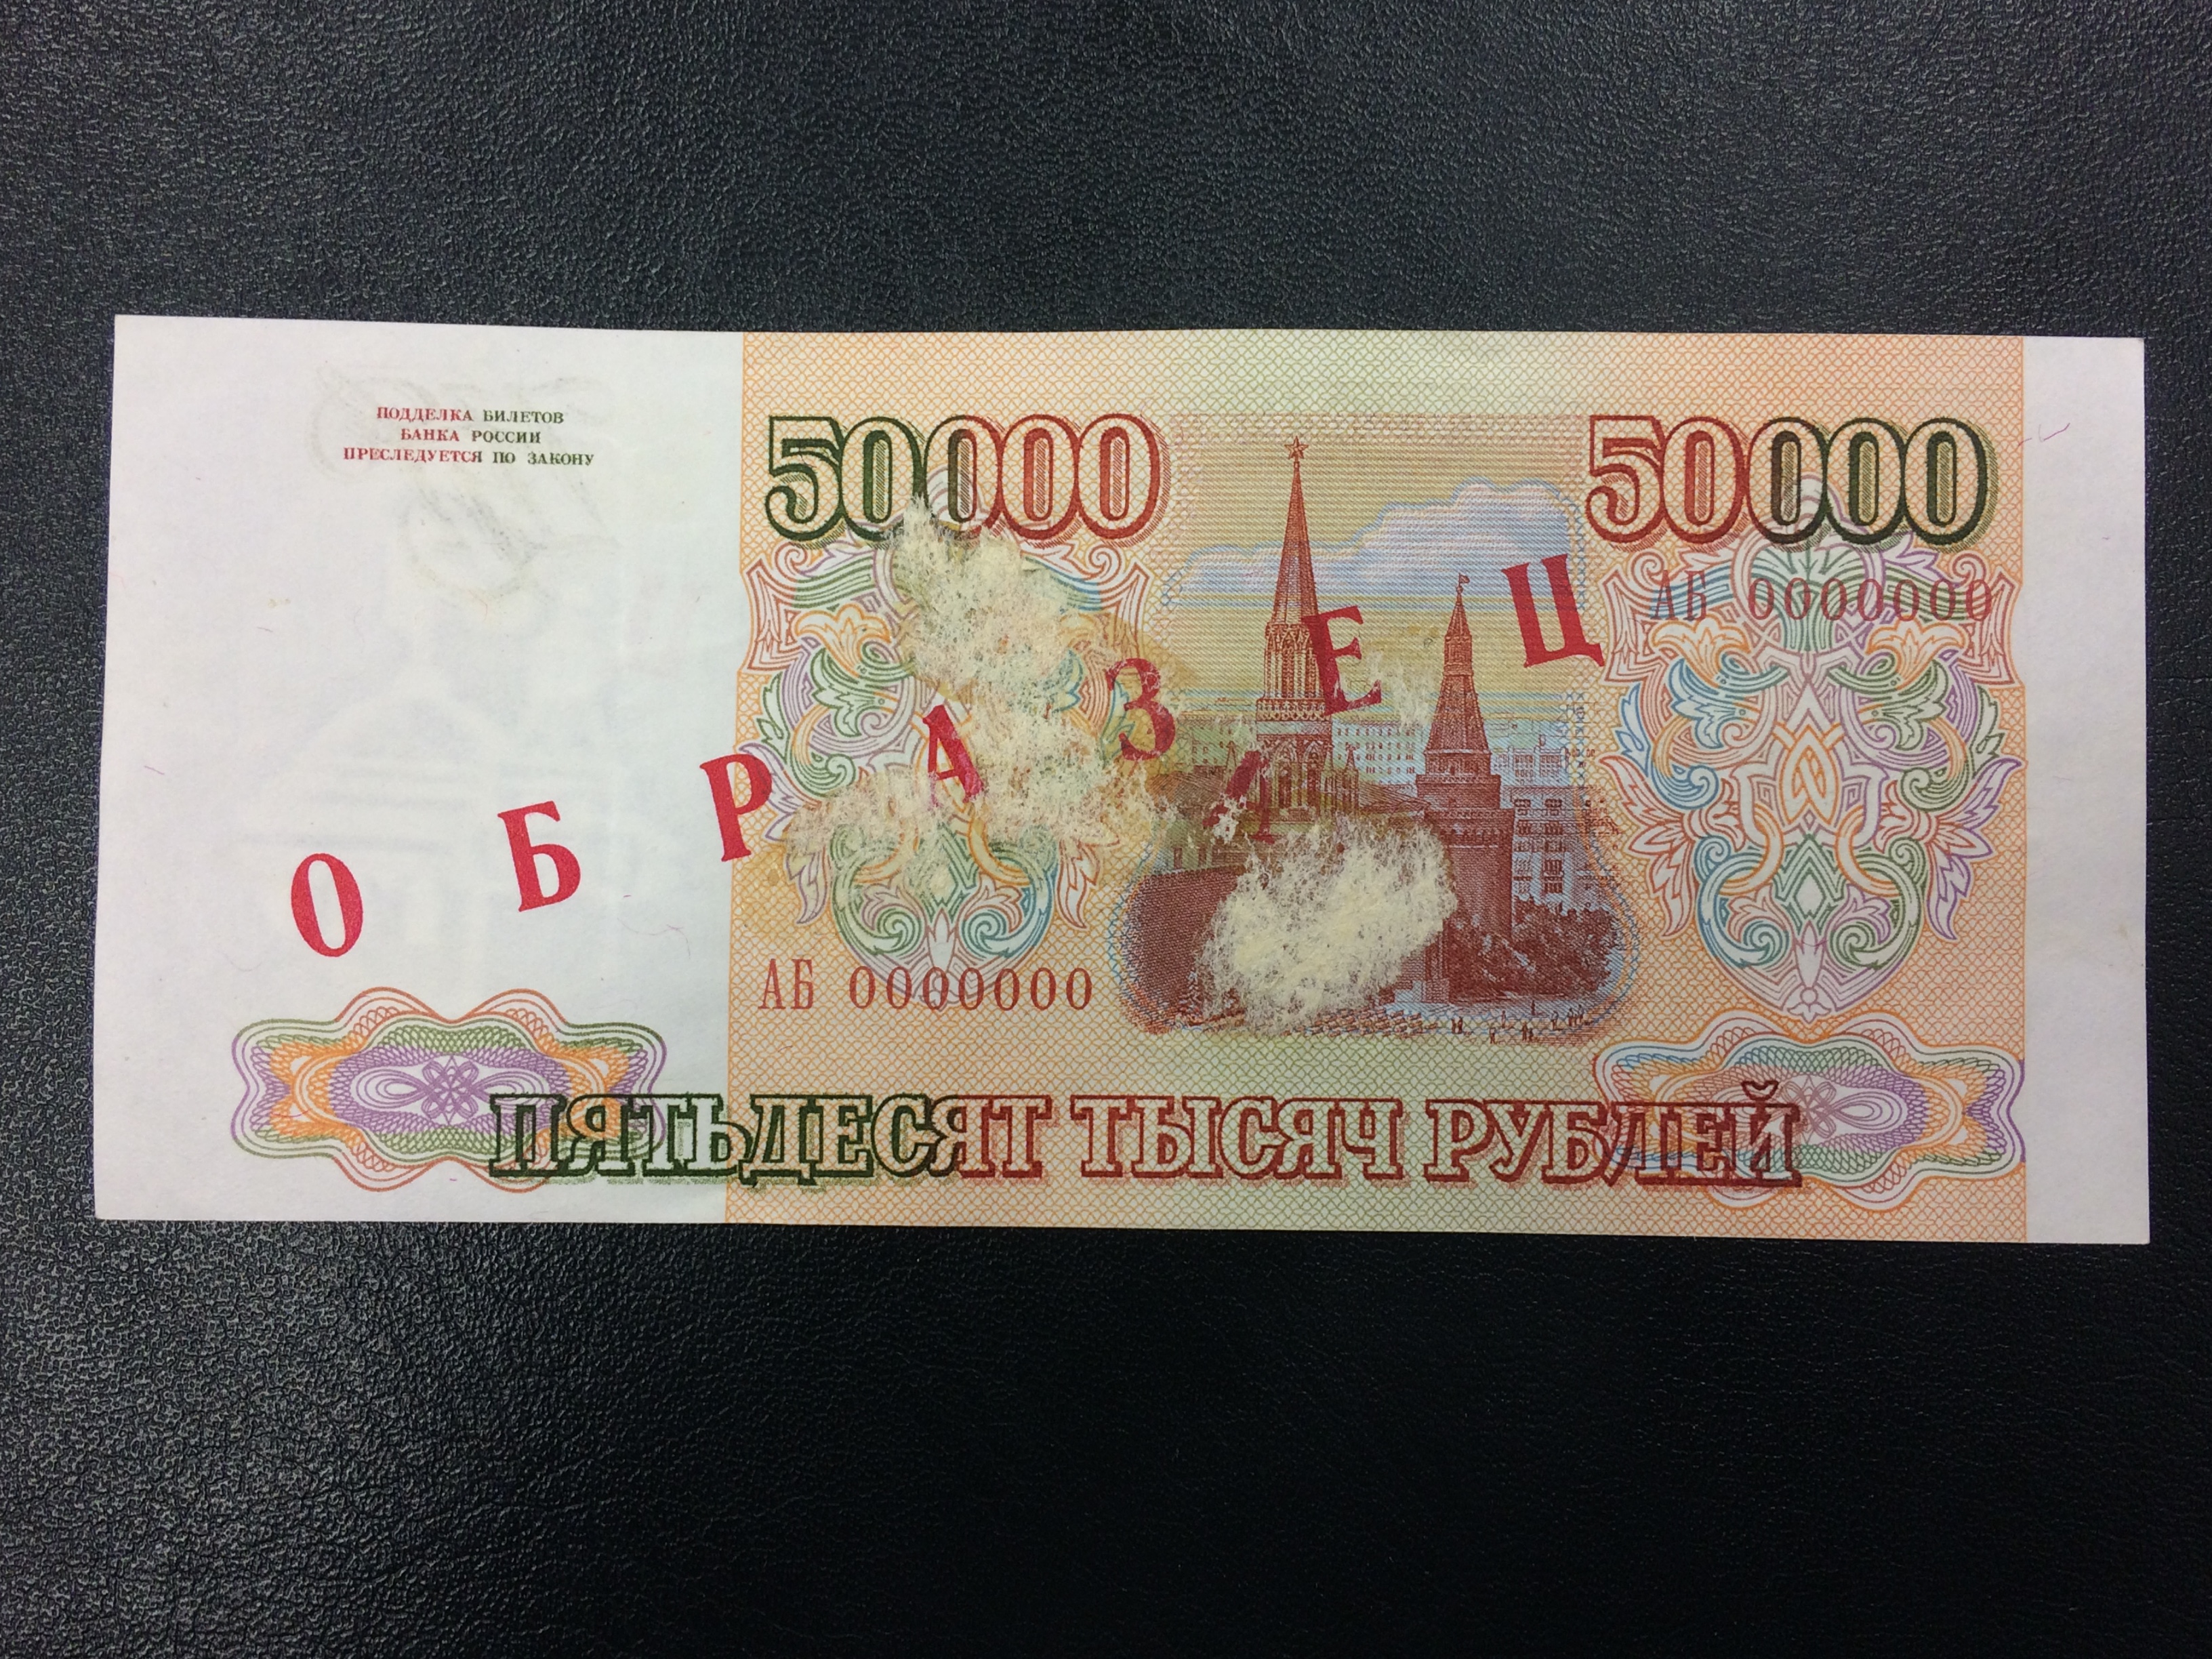 Мгновенный Займ 50000 рублей без отказа срочно